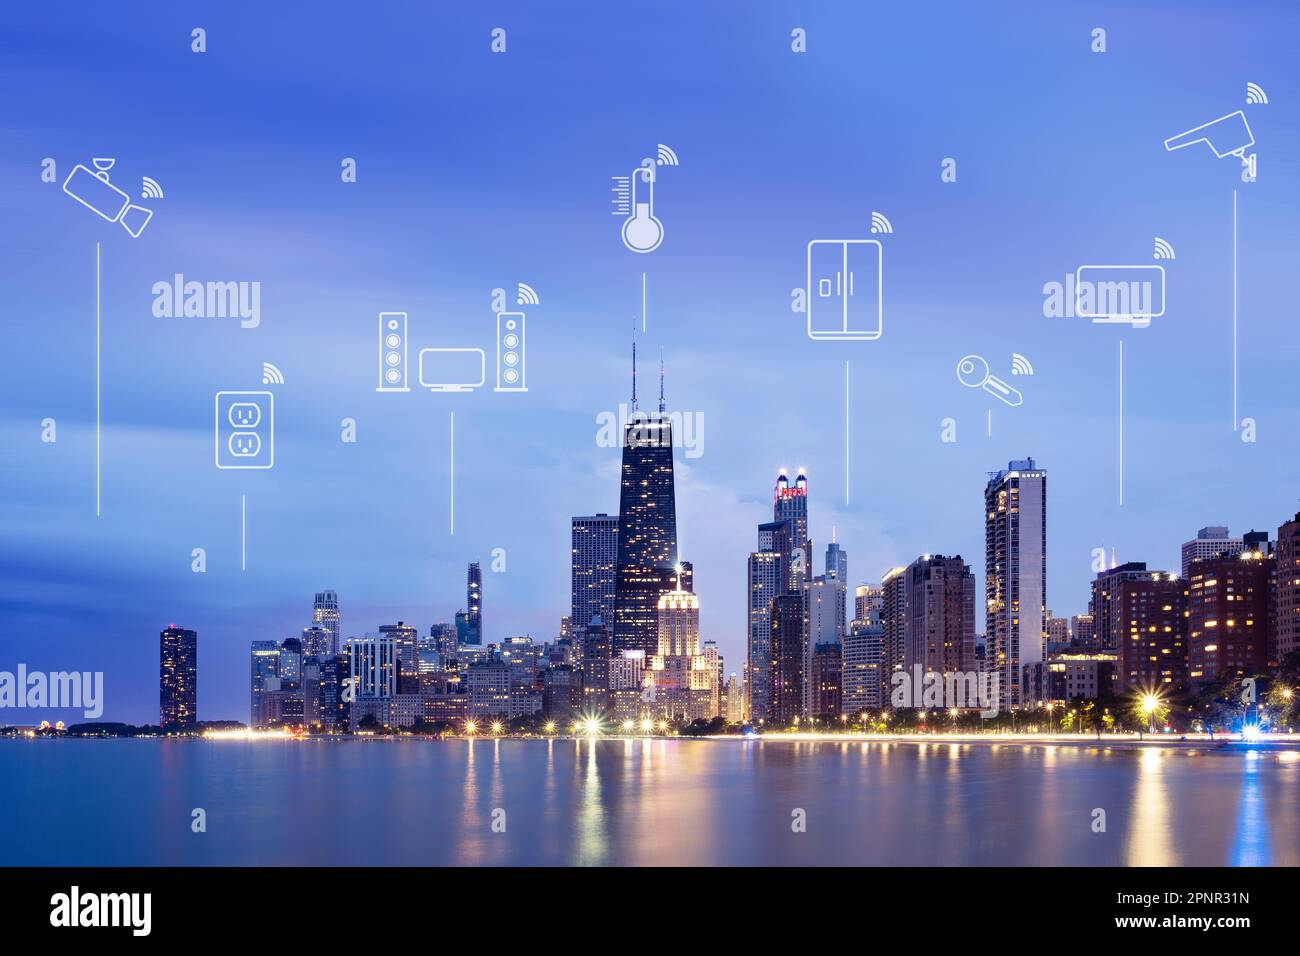 Illustrazioni di dispositivi intelligenti (internet delle cose) sullo skyline della città di notte, Chicago, Illinois, USA Foto Stock